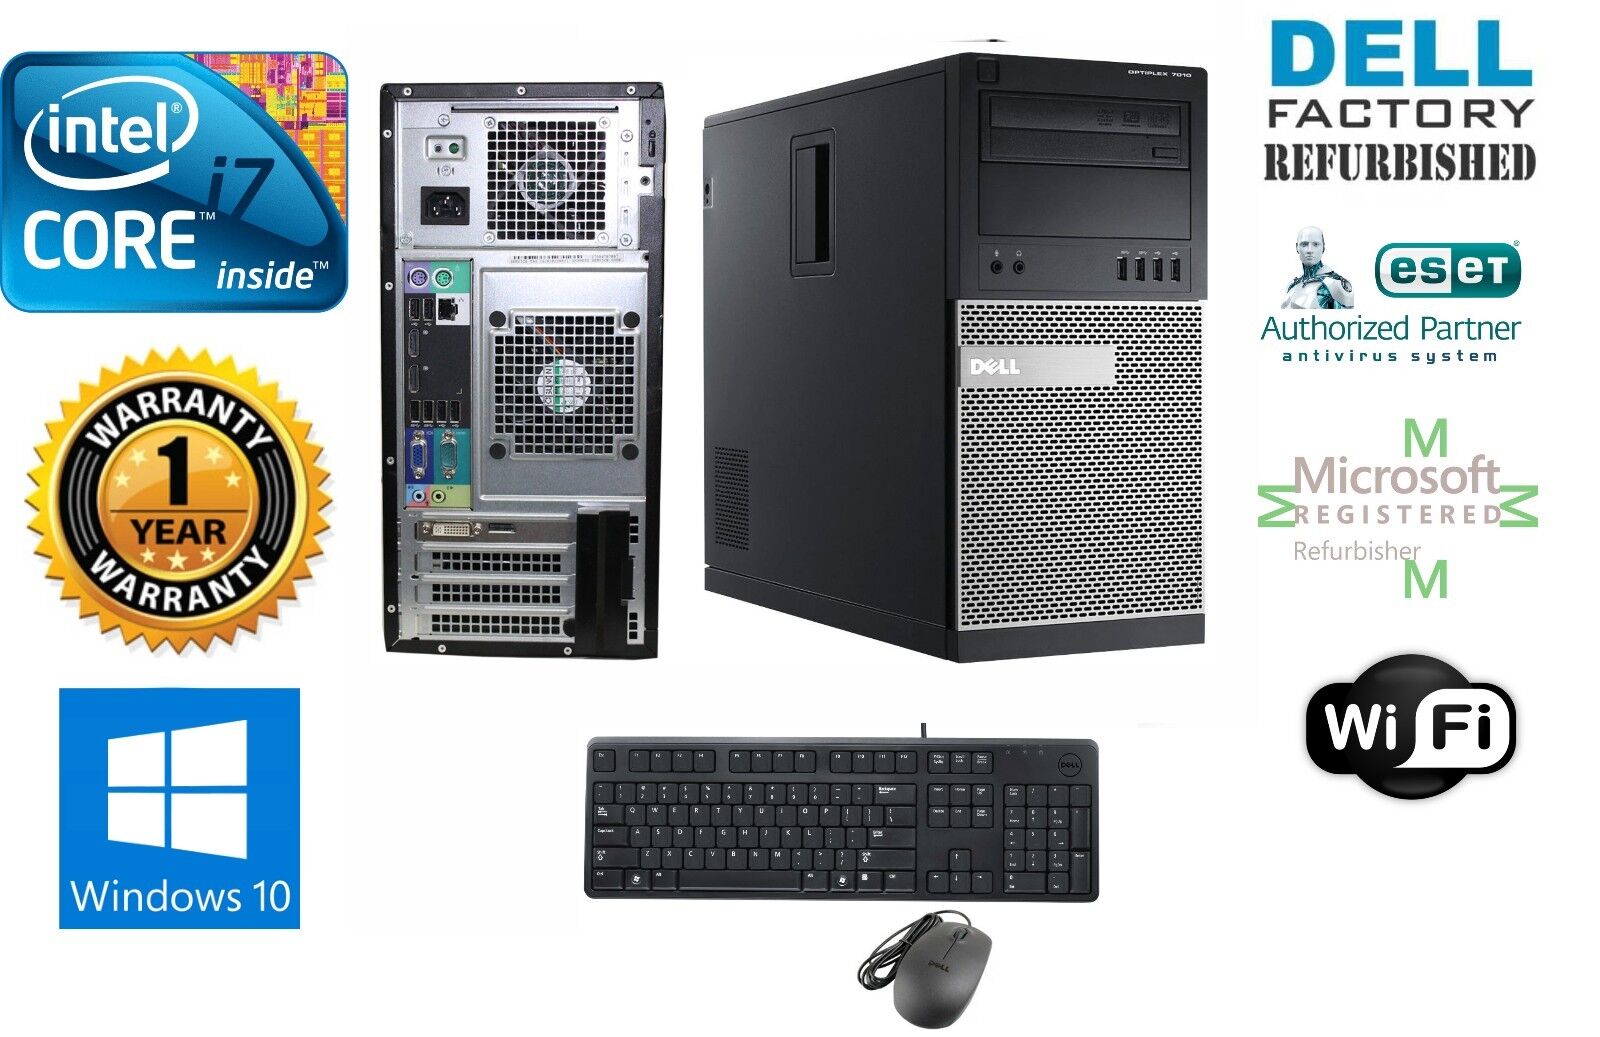 Dell TOWER PC DESKTOP i7 3770 Quad 32GB 1TB SSD Windows10 Hp 64 GTX-1060 3GB